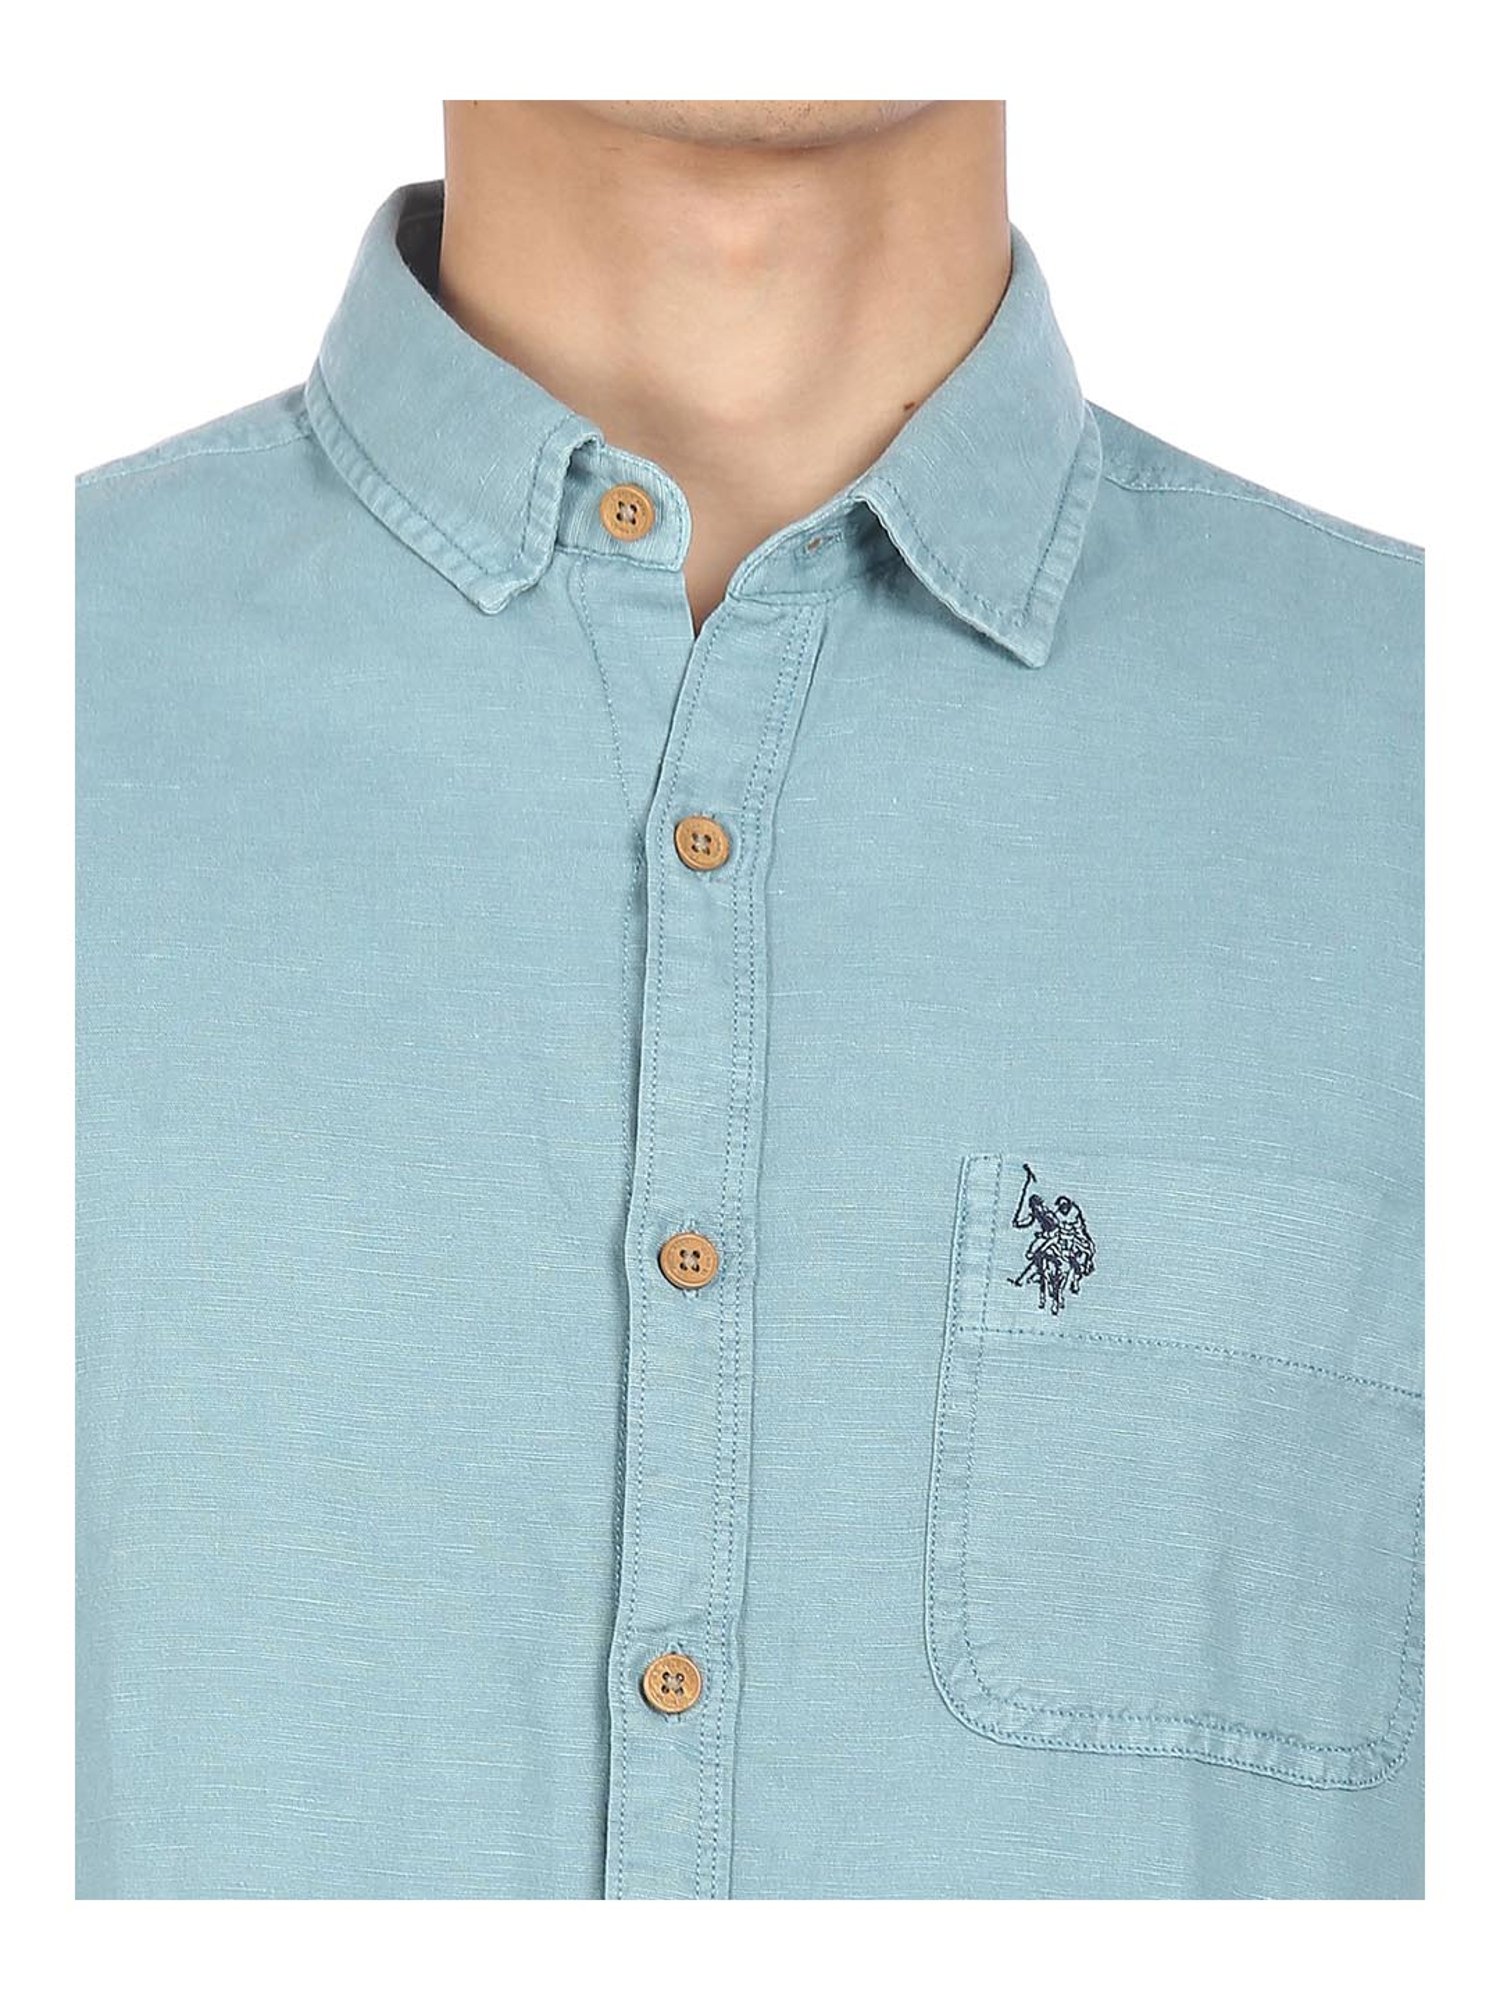 Buy . Polo Assn. Light Blue Regular Fit Shirt for Men Online @ Tata CLiQ